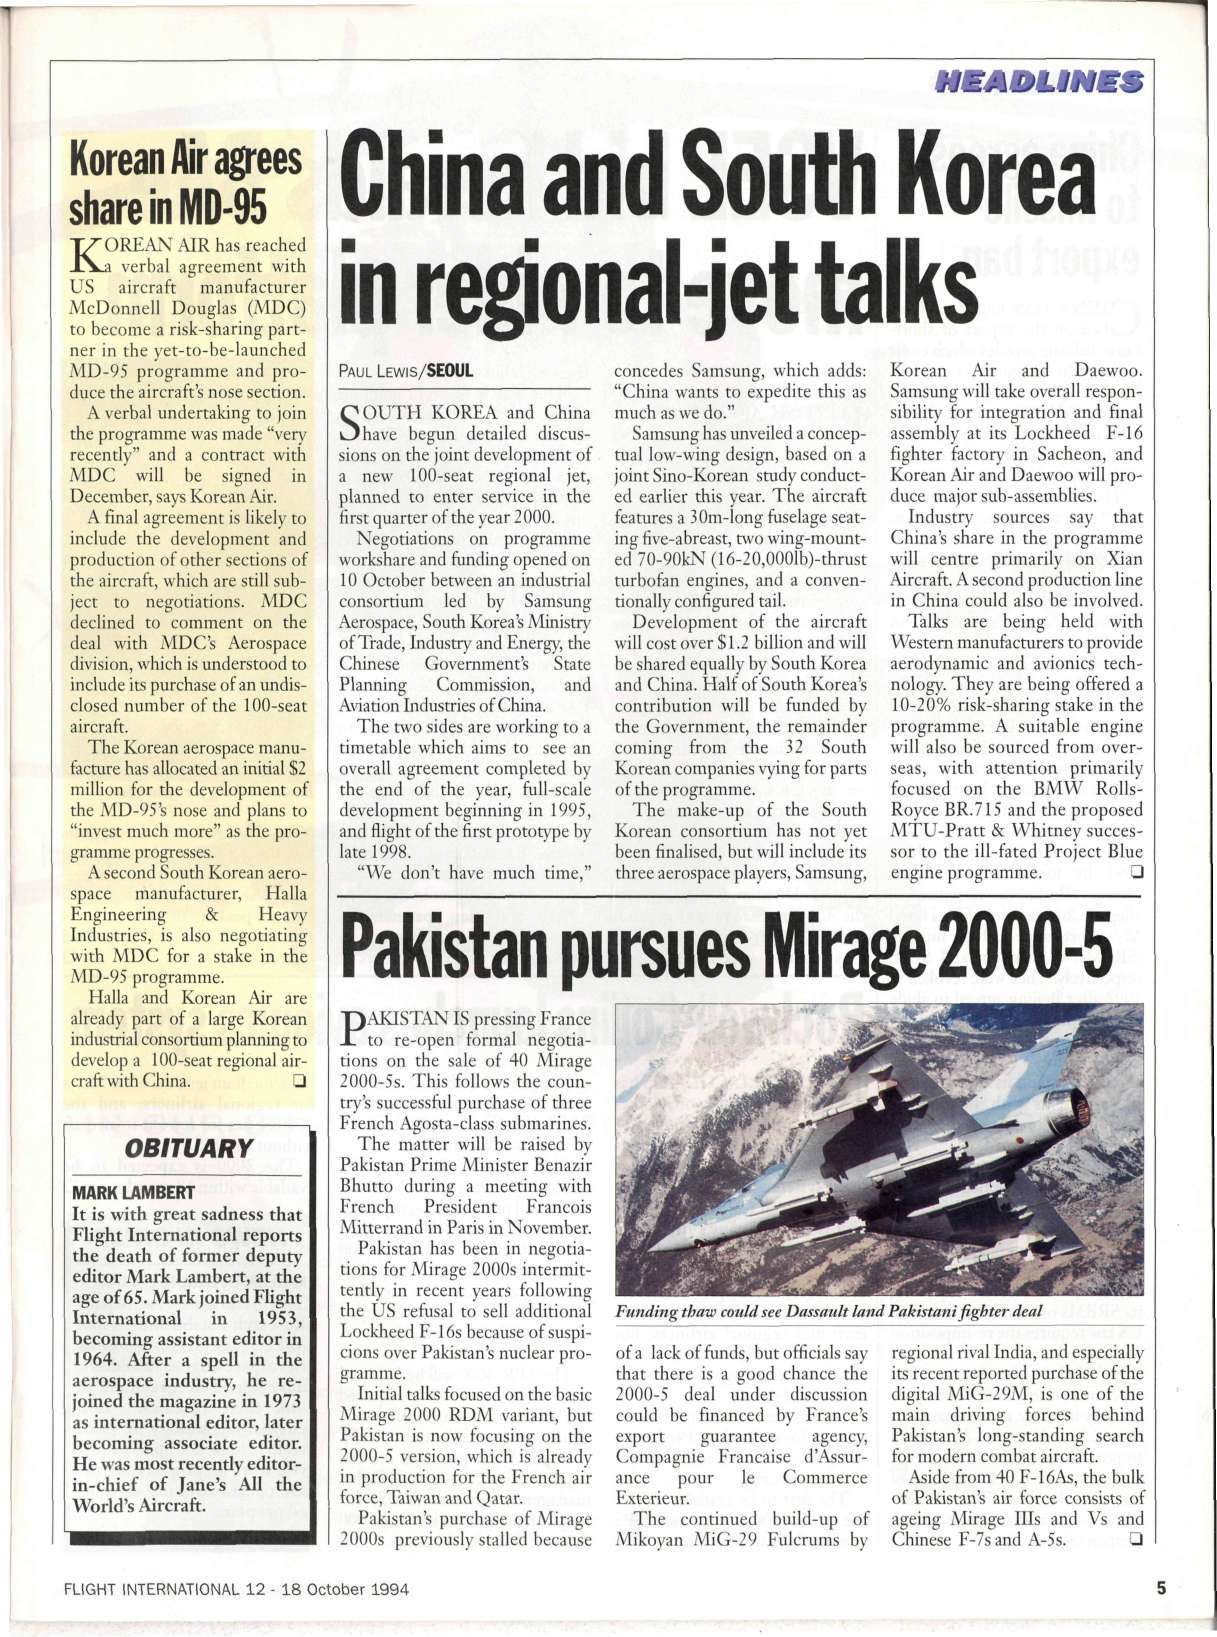 PAF Mirage-2K-5 1994 - 2448 (Benazir era).jpg